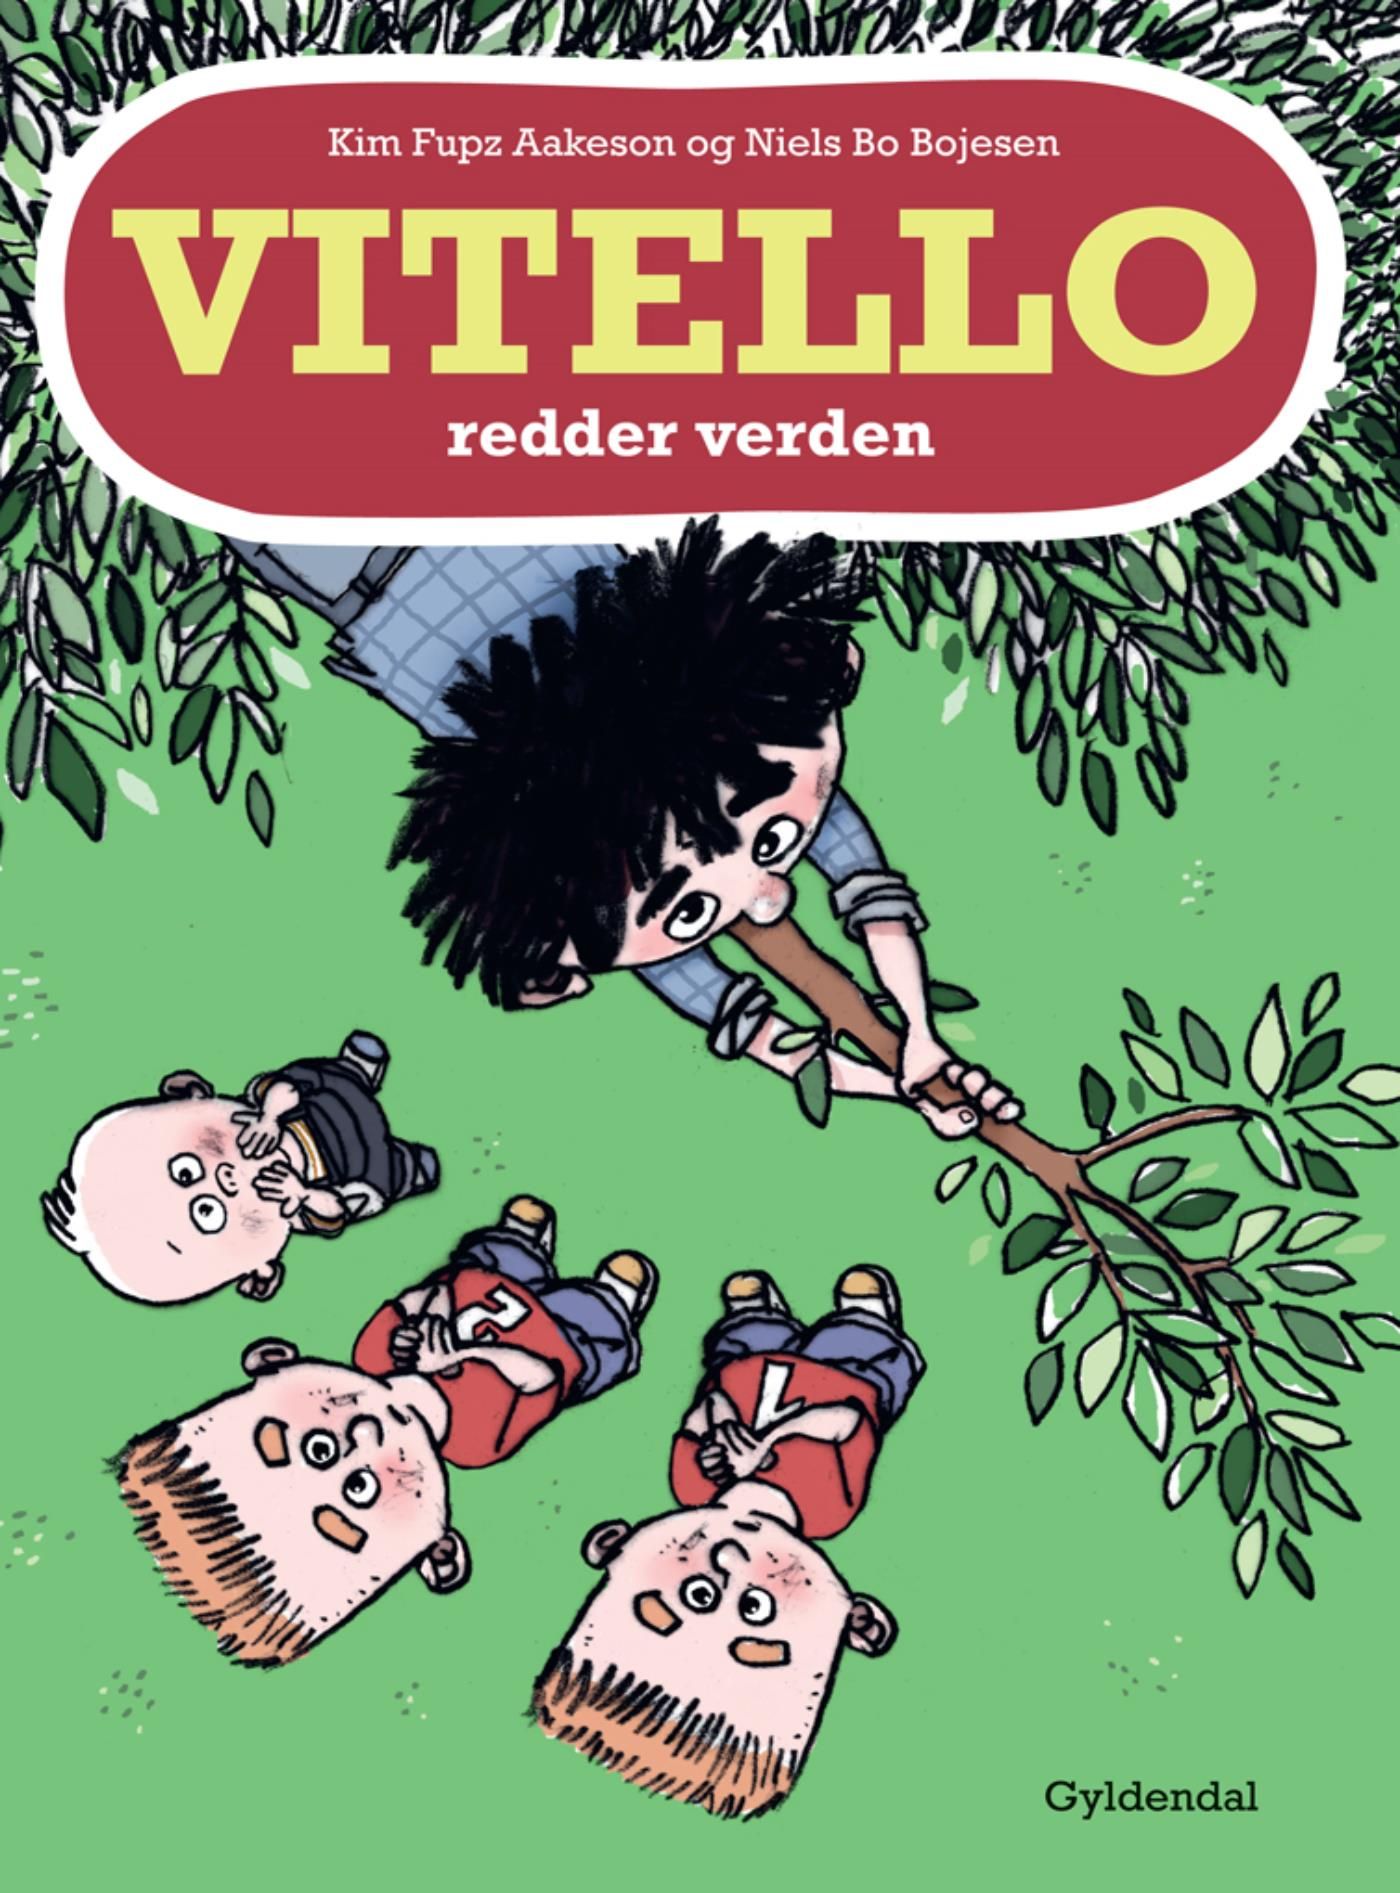 Vitello redder verden Lyt&læs, e-bok av Niels Bo Bojesen, Kim Fupz Aakeson